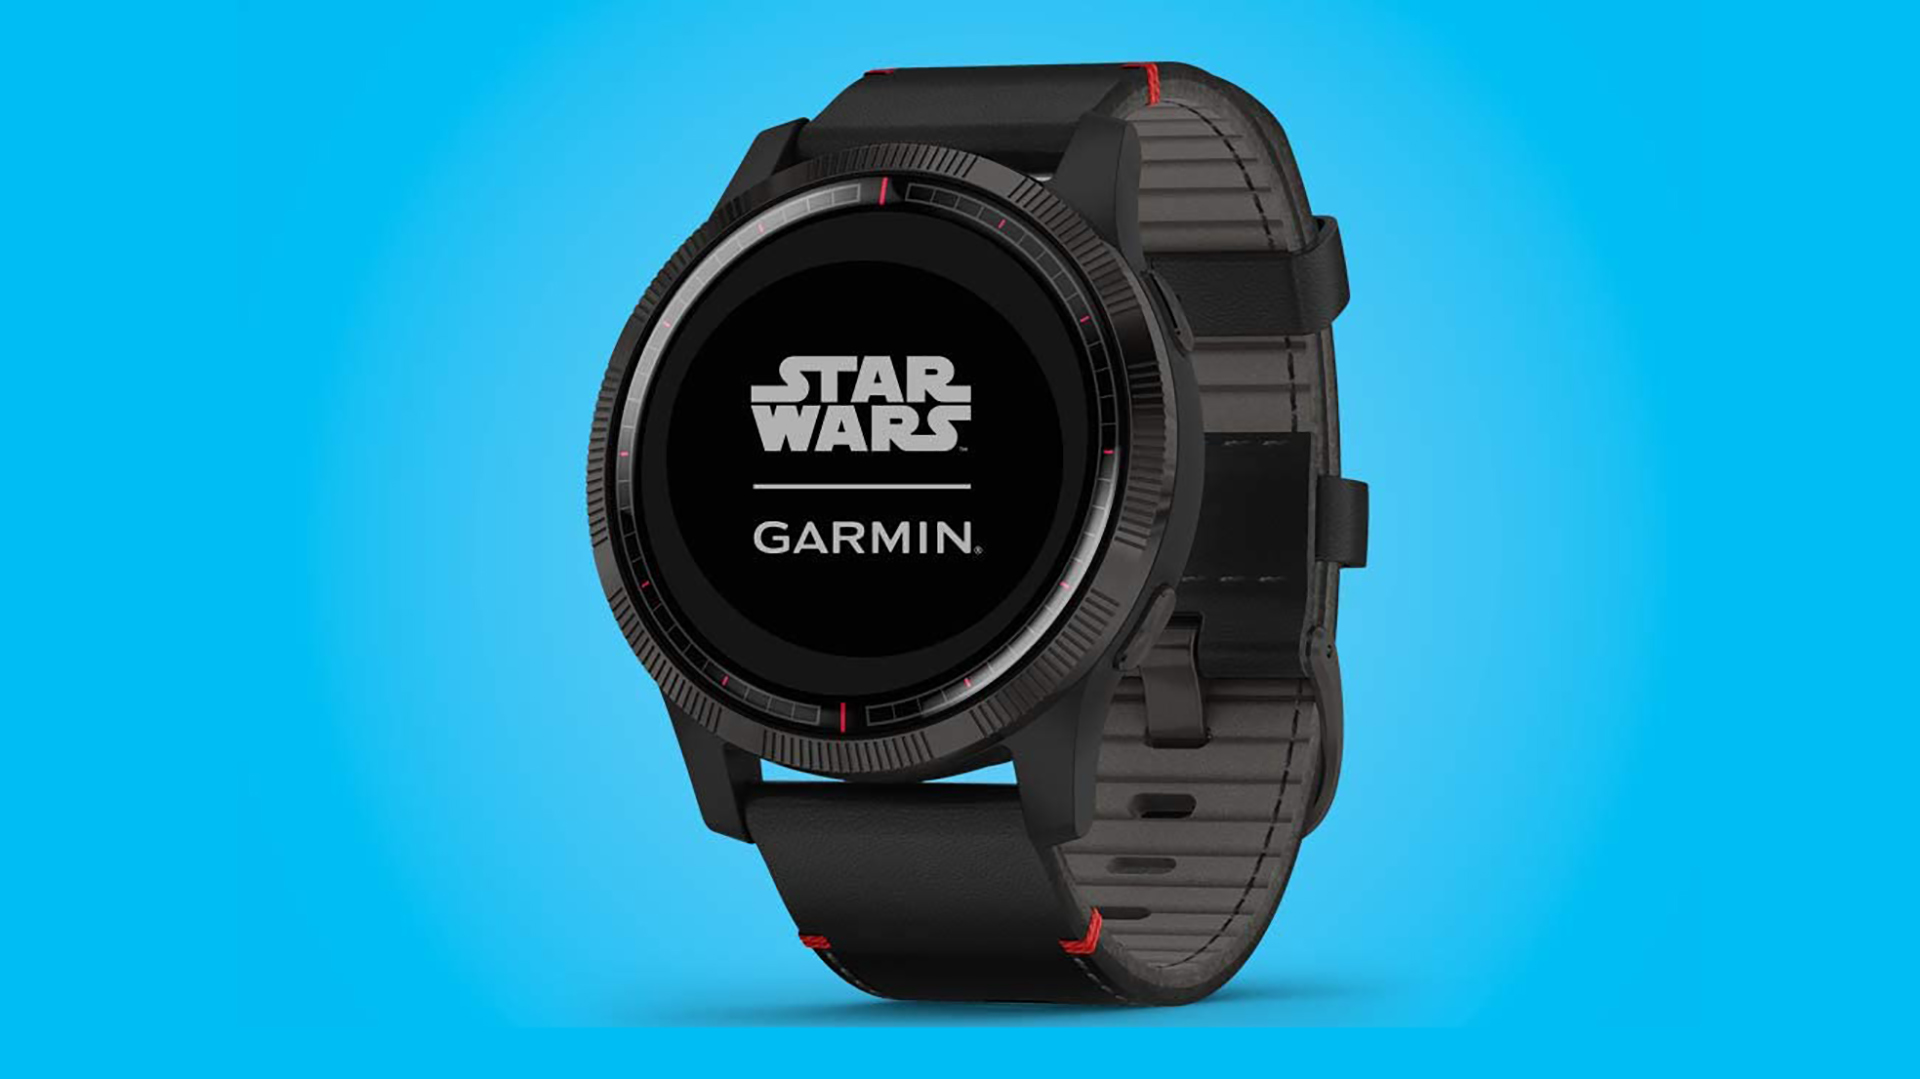 Garmin Star Wars Smartwatches Deal 2020